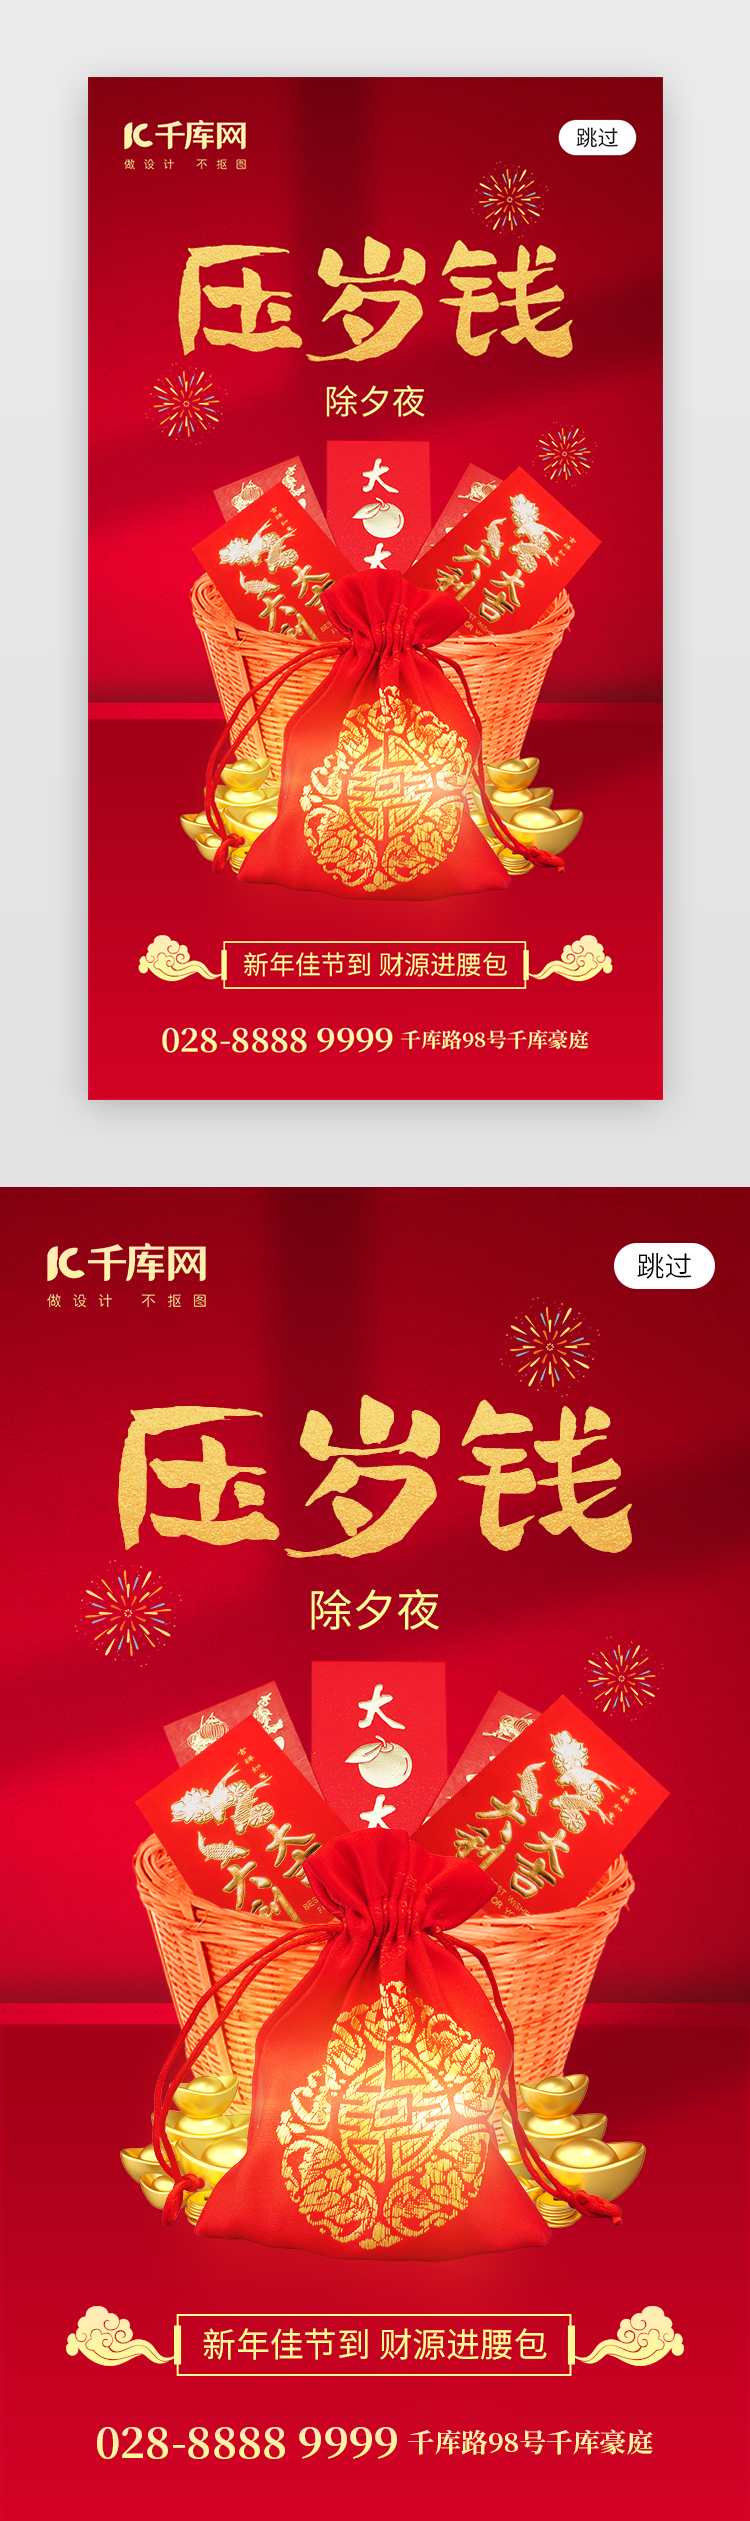 新年压岁钱app闪屏创意红色红包福袋图片